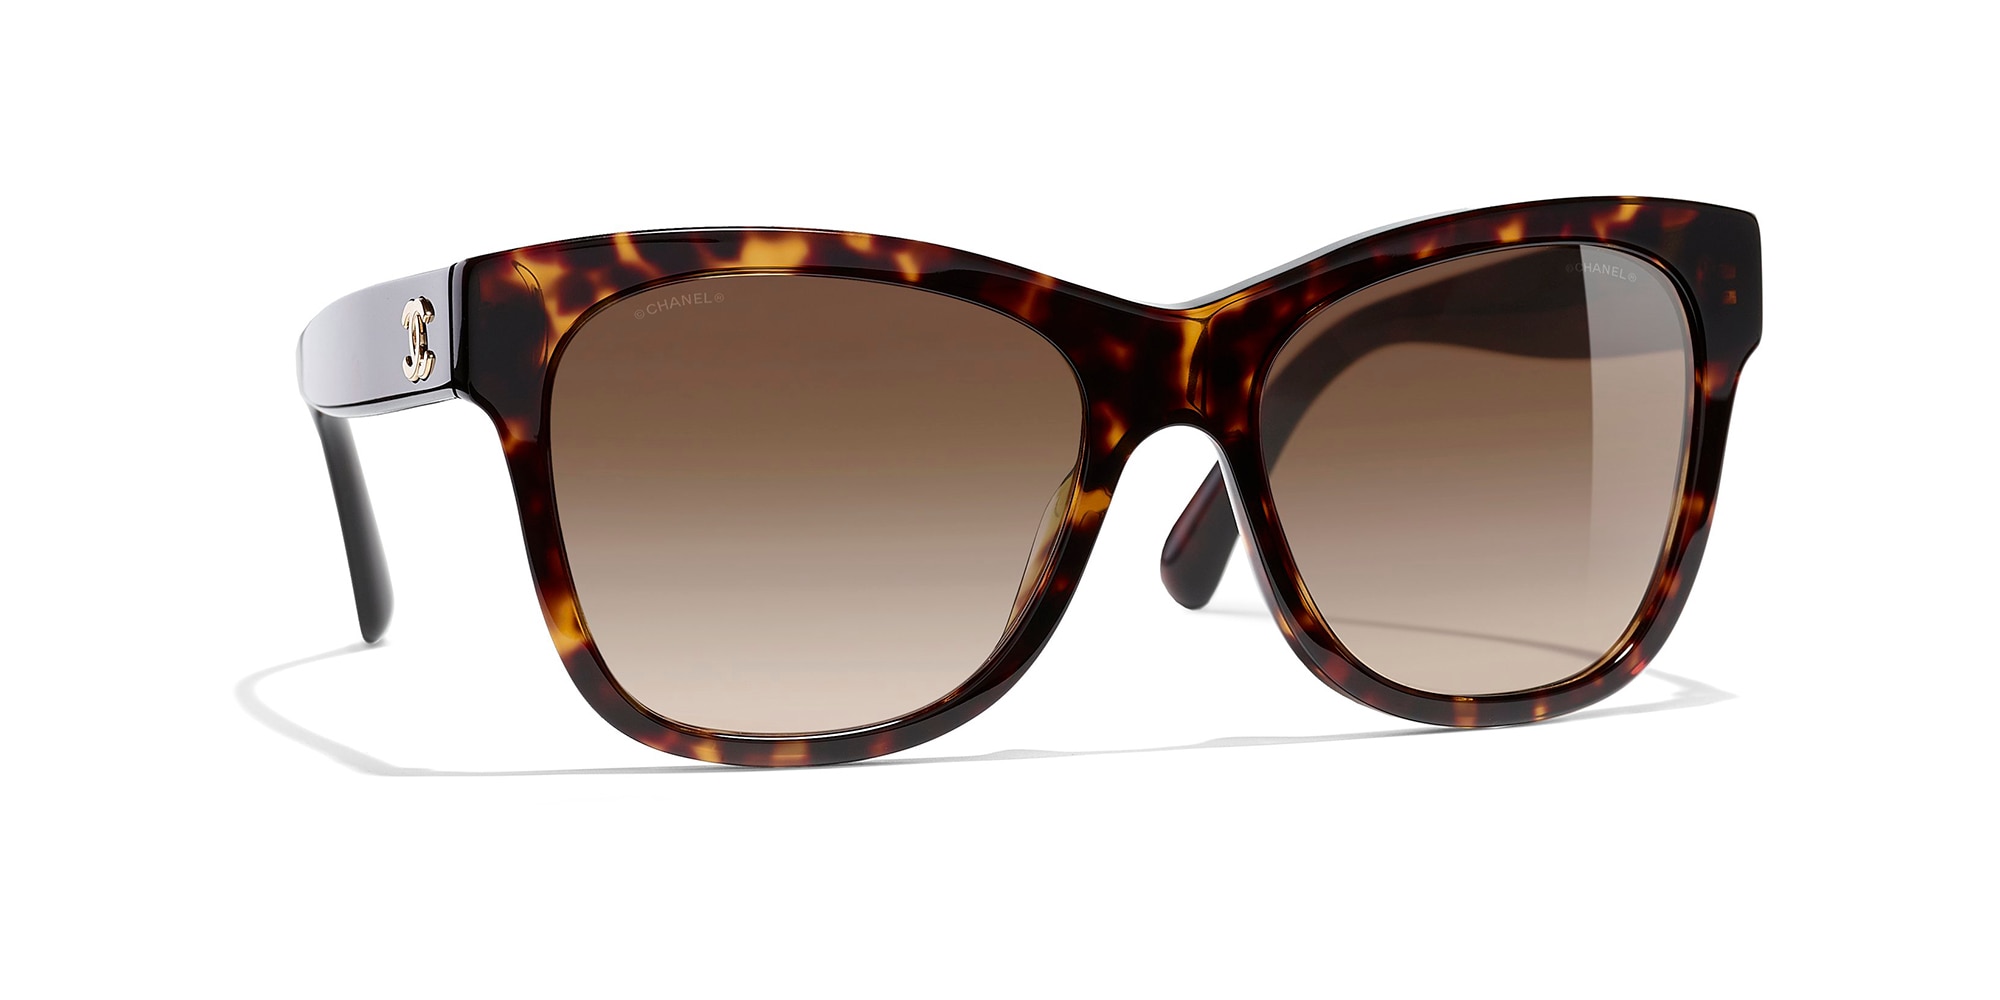 Chanel Square Sunglasses CH5417 54 Brown  Black  Beige Sunglasses  Sunglass  Hut Australia